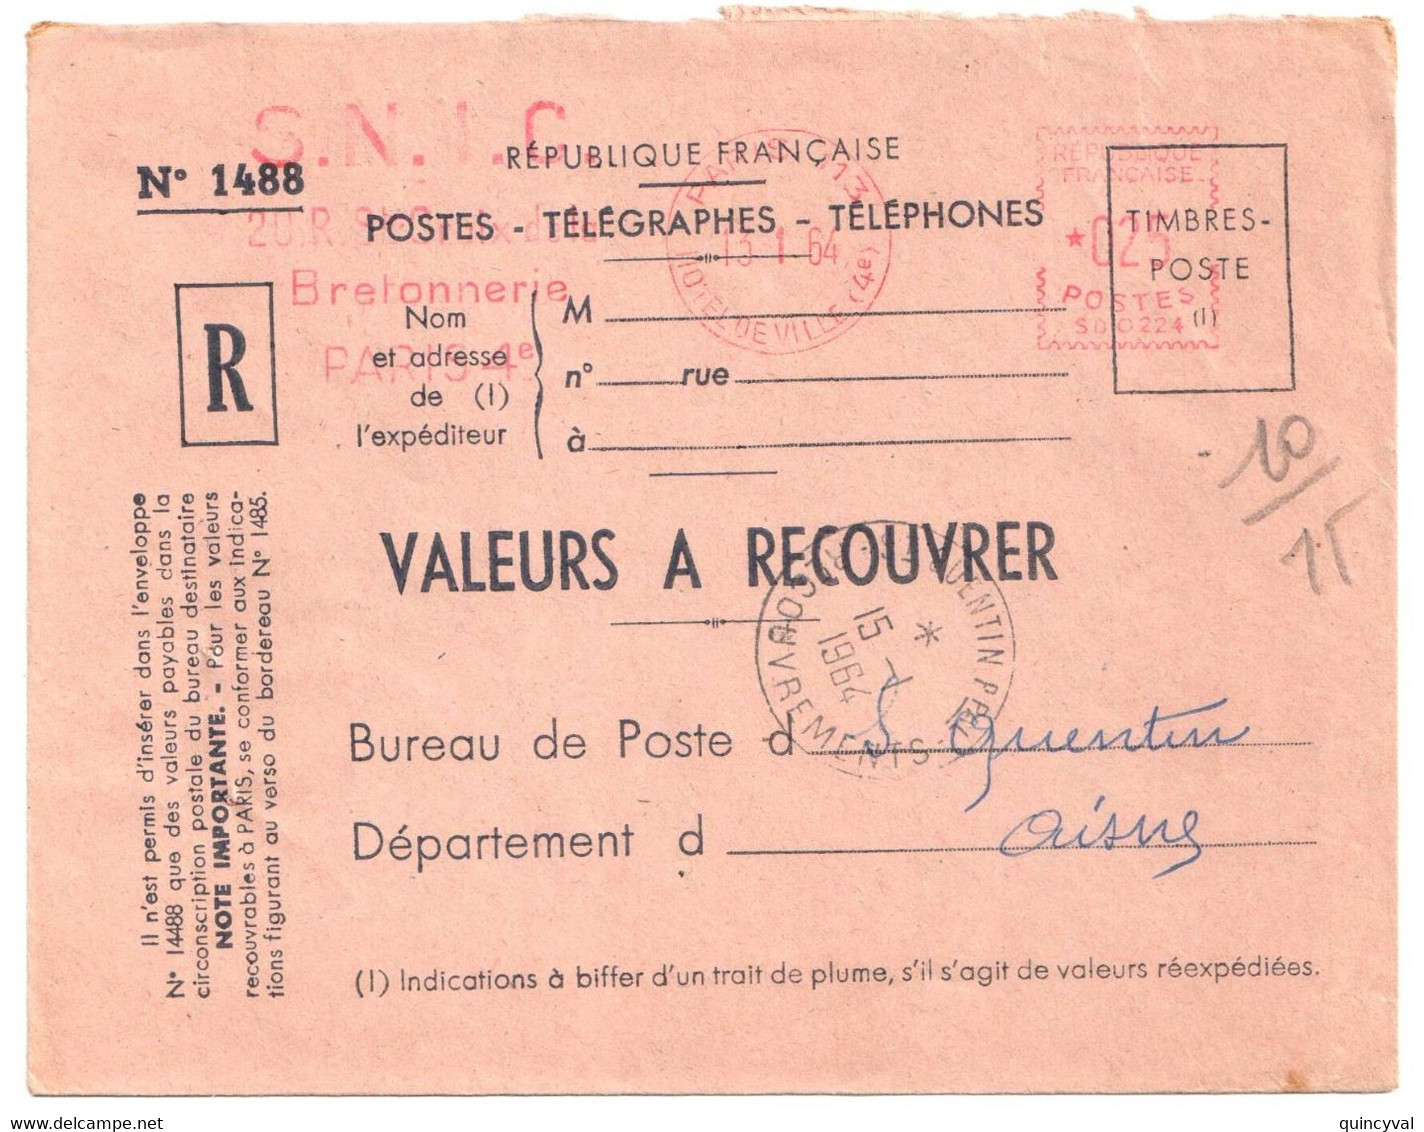 PARIS 113 Valeurs à Recouvrer Env 1488 Ob 13 1 1964 EMA 25c SD0224 Dest St QUENTIN Ppal RECOUVREMENTS   Aisne - Freistempel